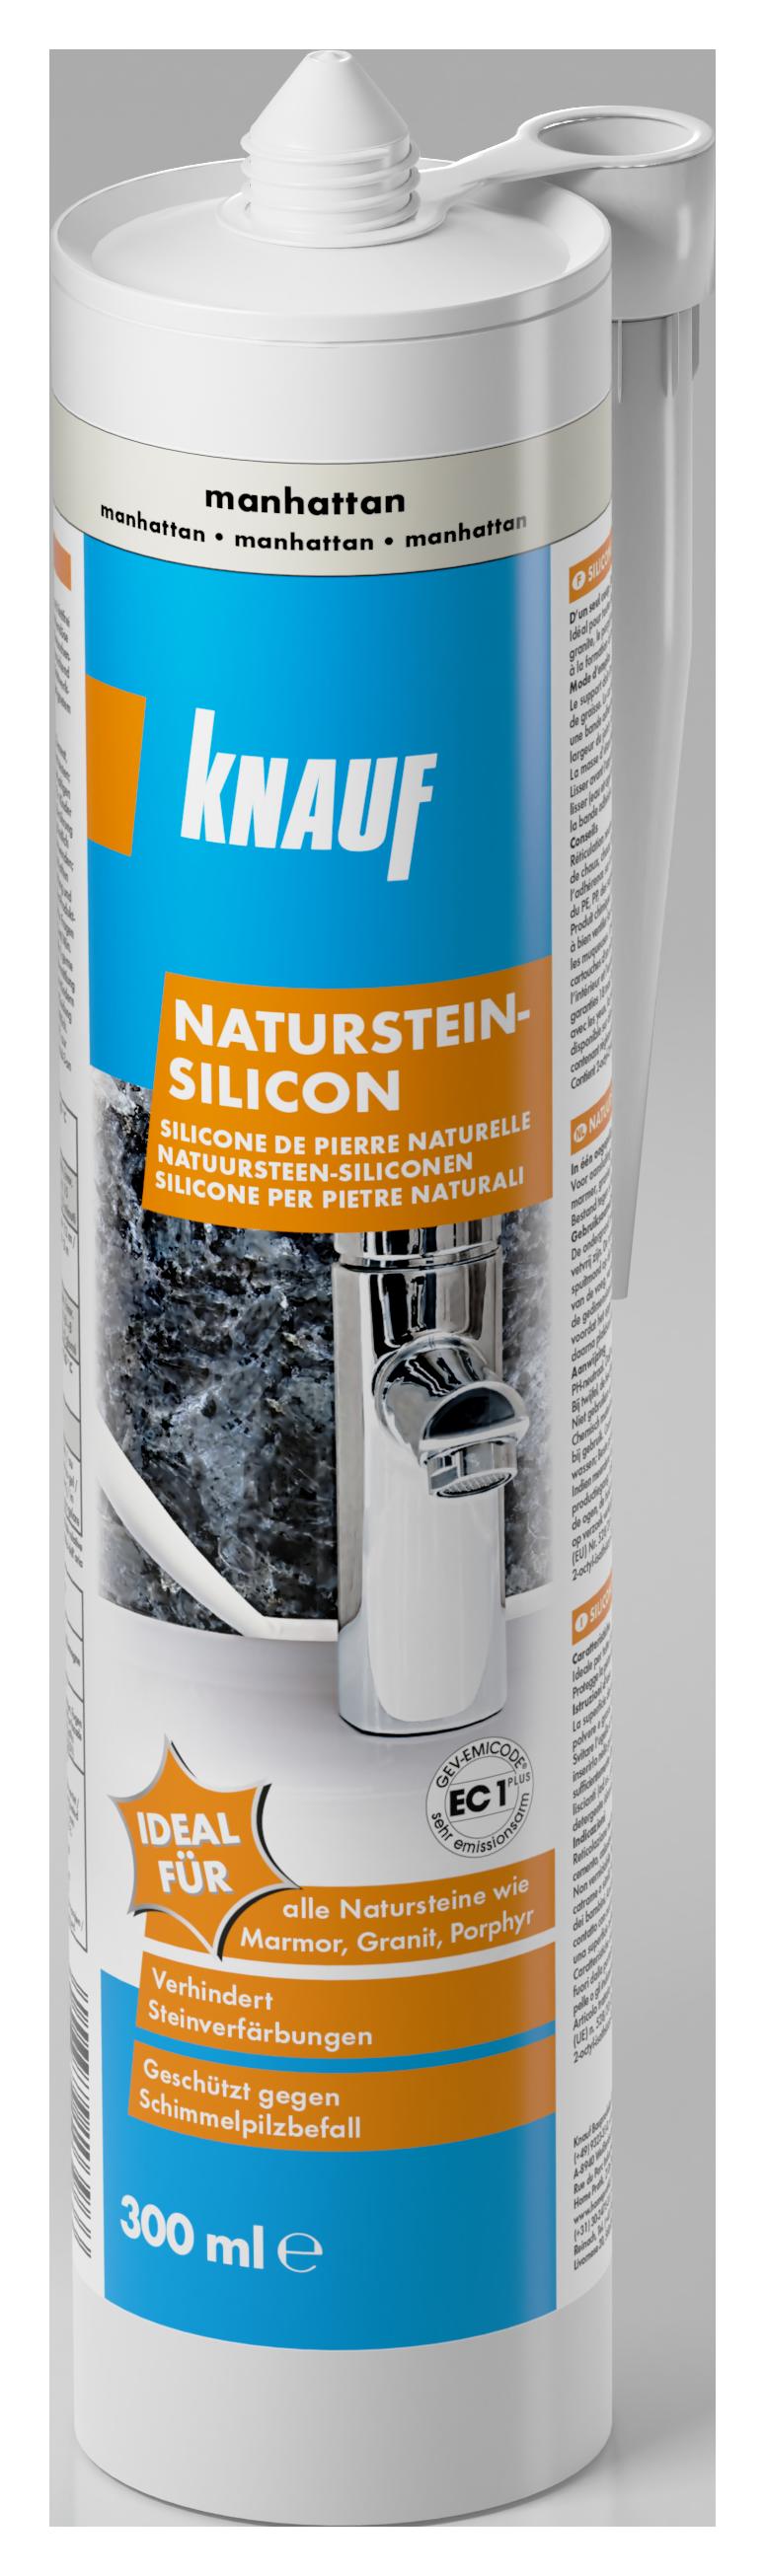 Knauf Naturstein-Silicon manhatten 300 ml